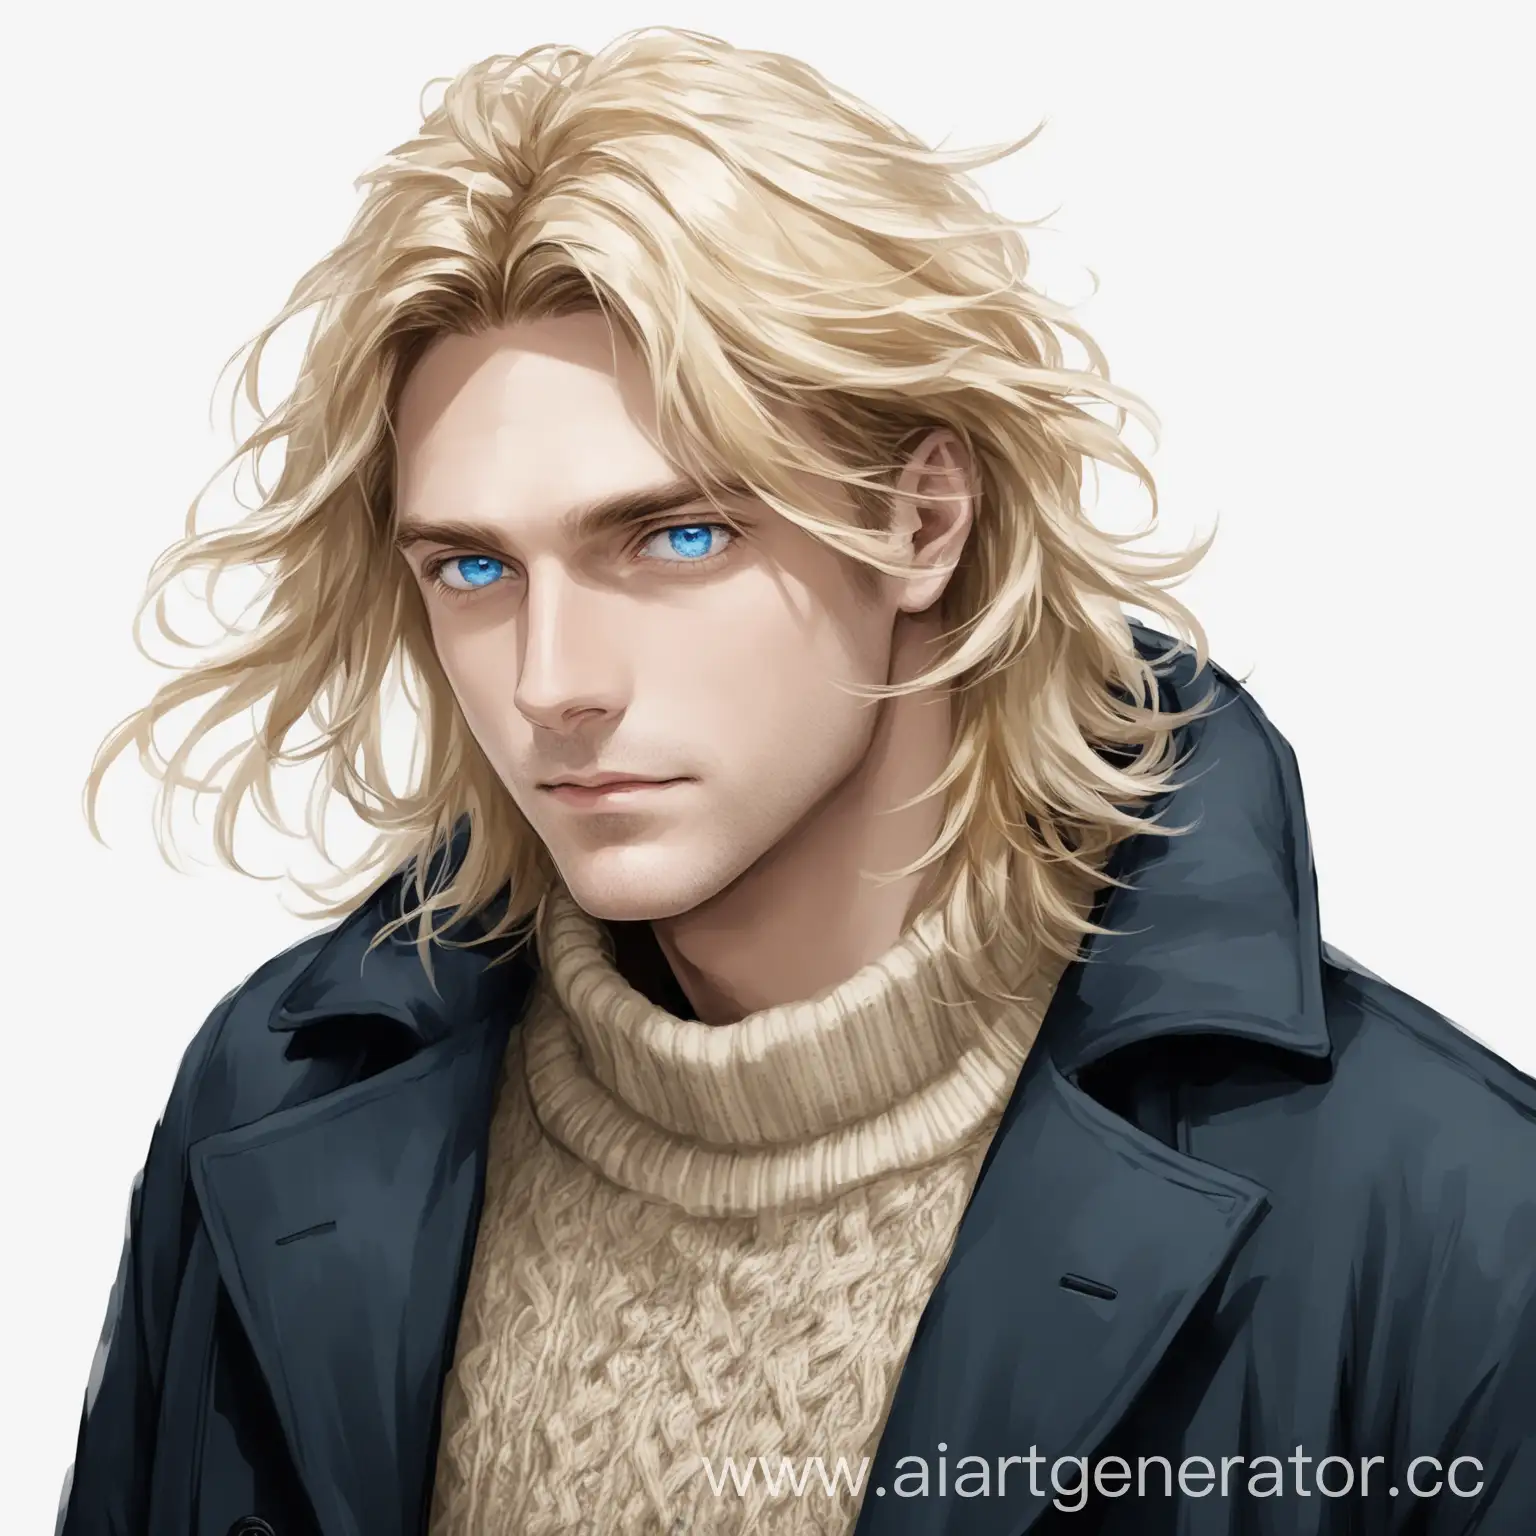 Мужчина блондин голубоглазый, с растрёпанными волосами средней длины, плаще и свитере, на белом фоне 